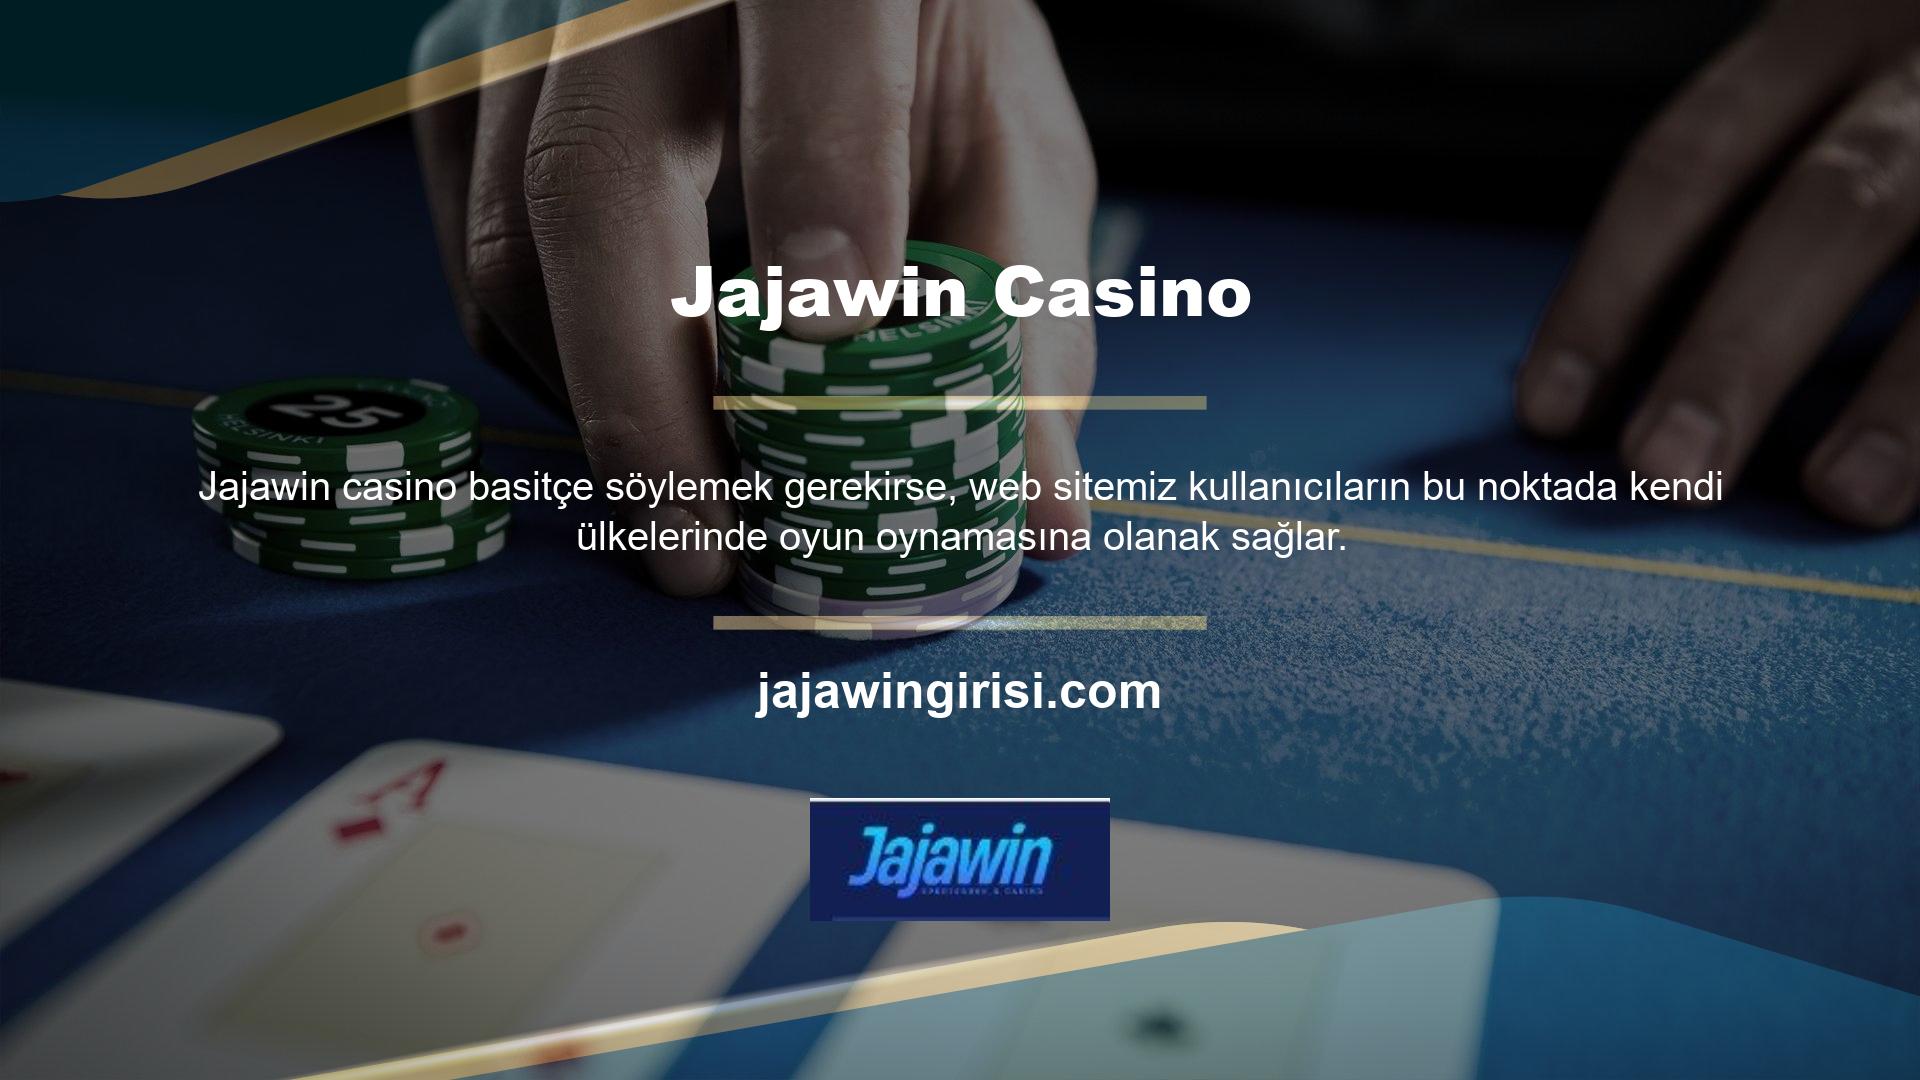 Jajawin casino oyunlarına katılmam mümkün mü? Daha önce de belirttiğim gibi meşru ve güvenilir bir web sitemiz var